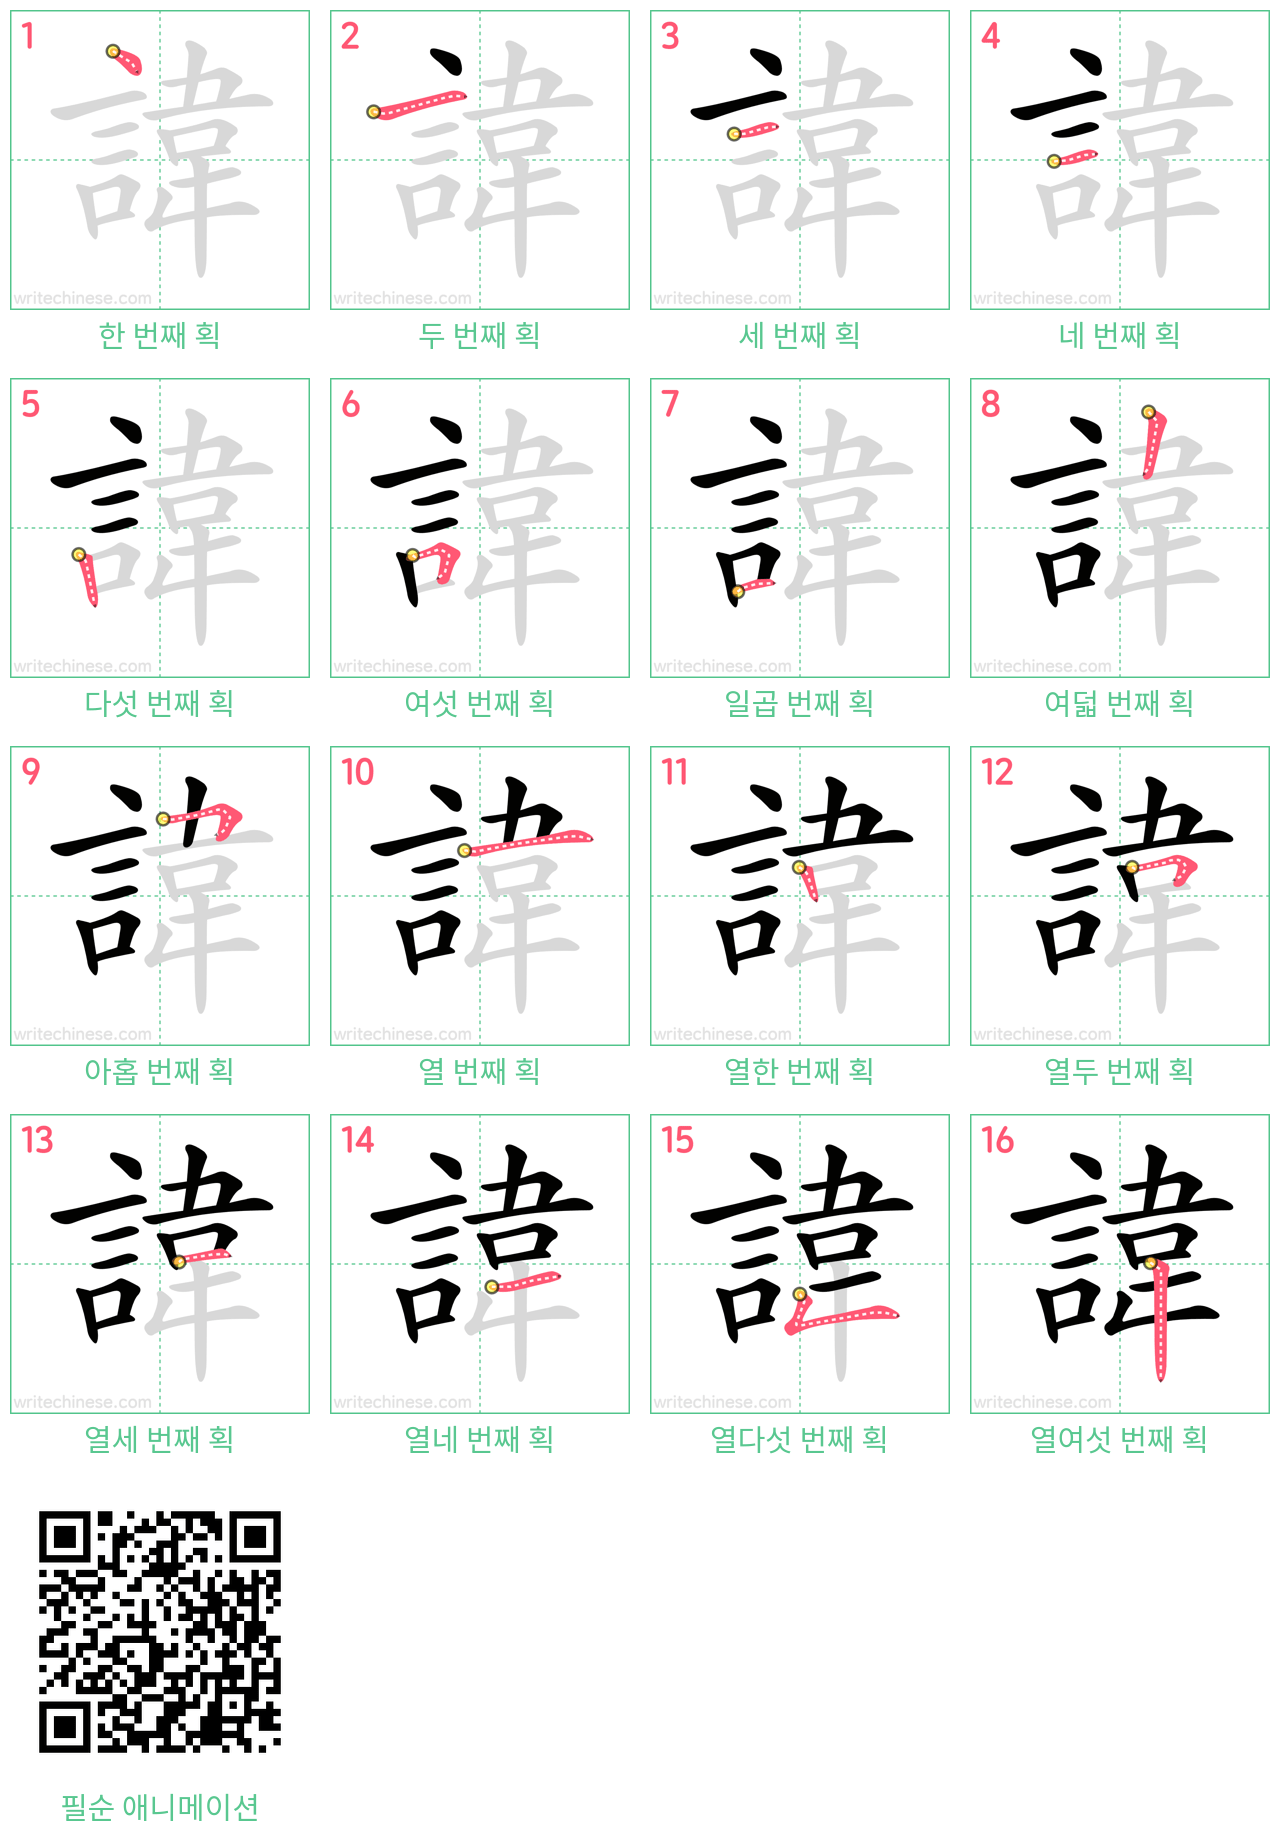 諱 step-by-step stroke order diagrams